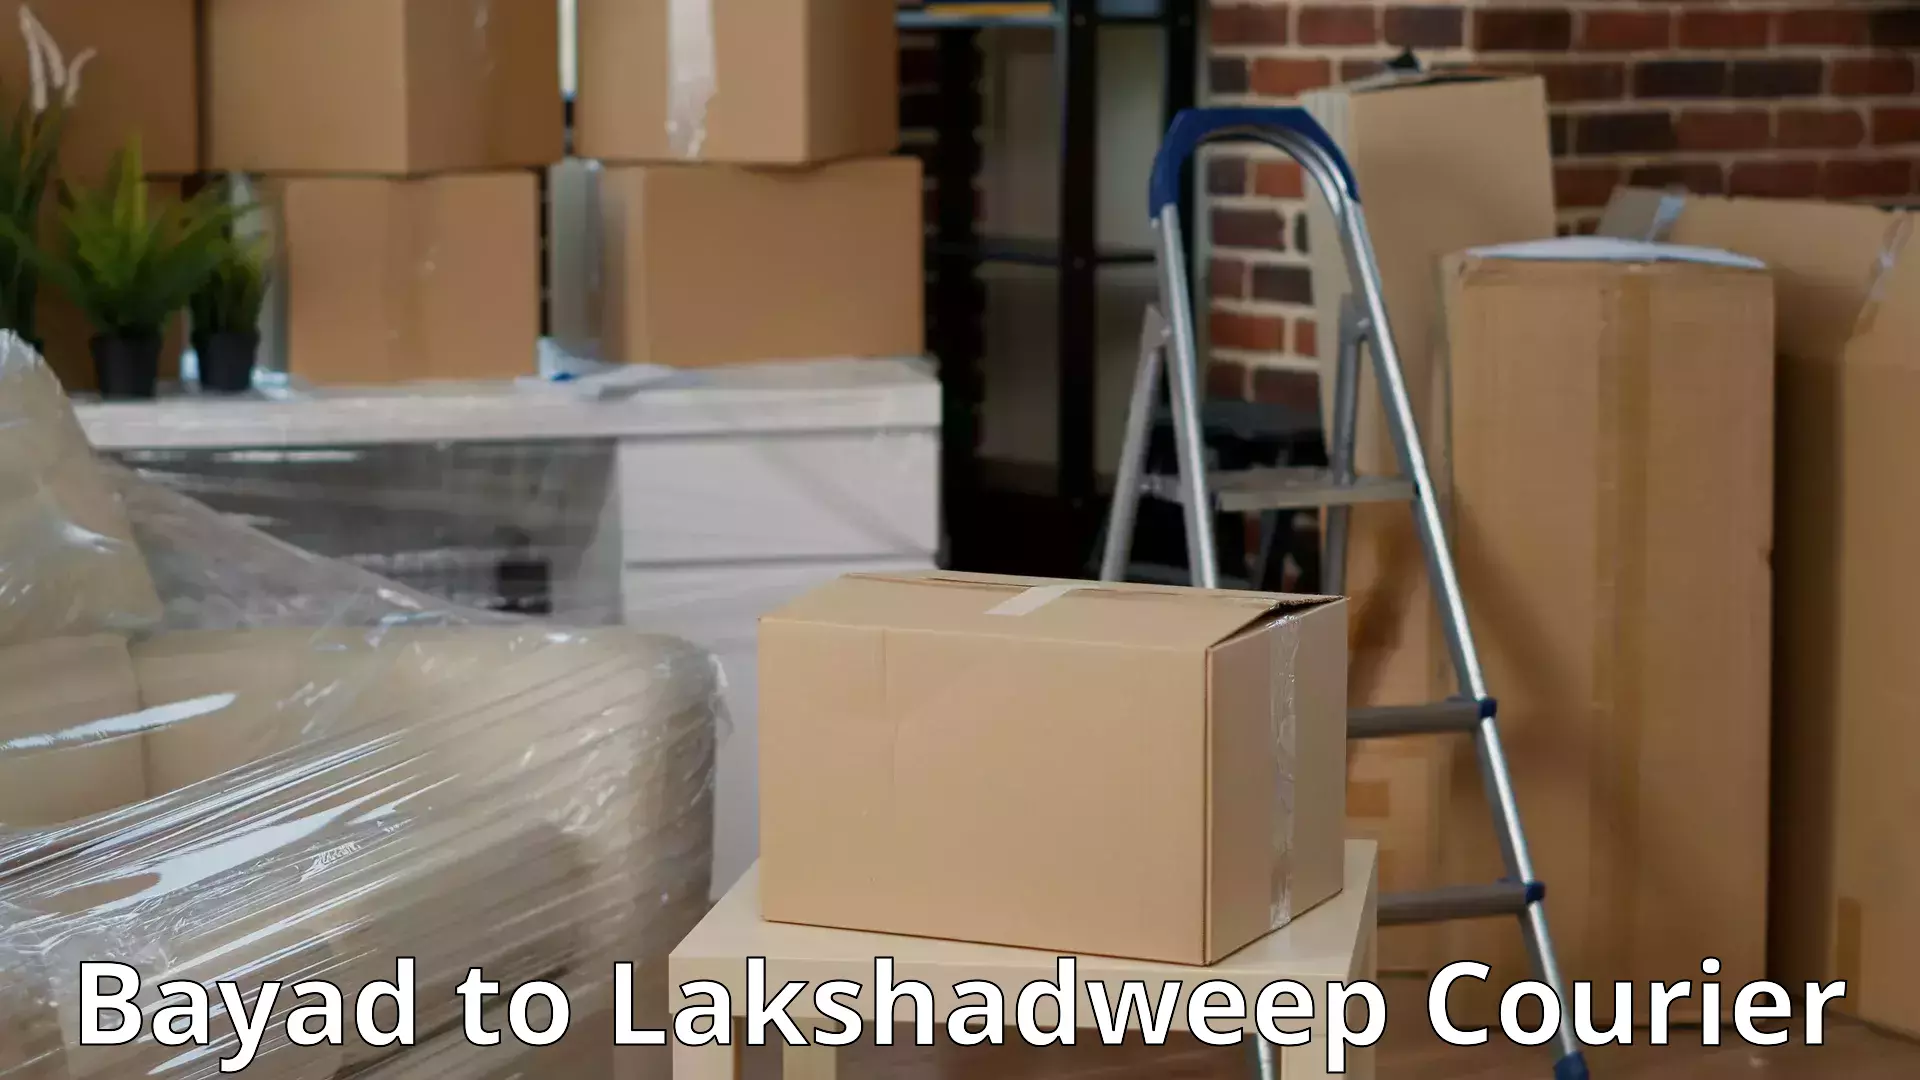 Door-to-door relocation services Bayad to Lakshadweep